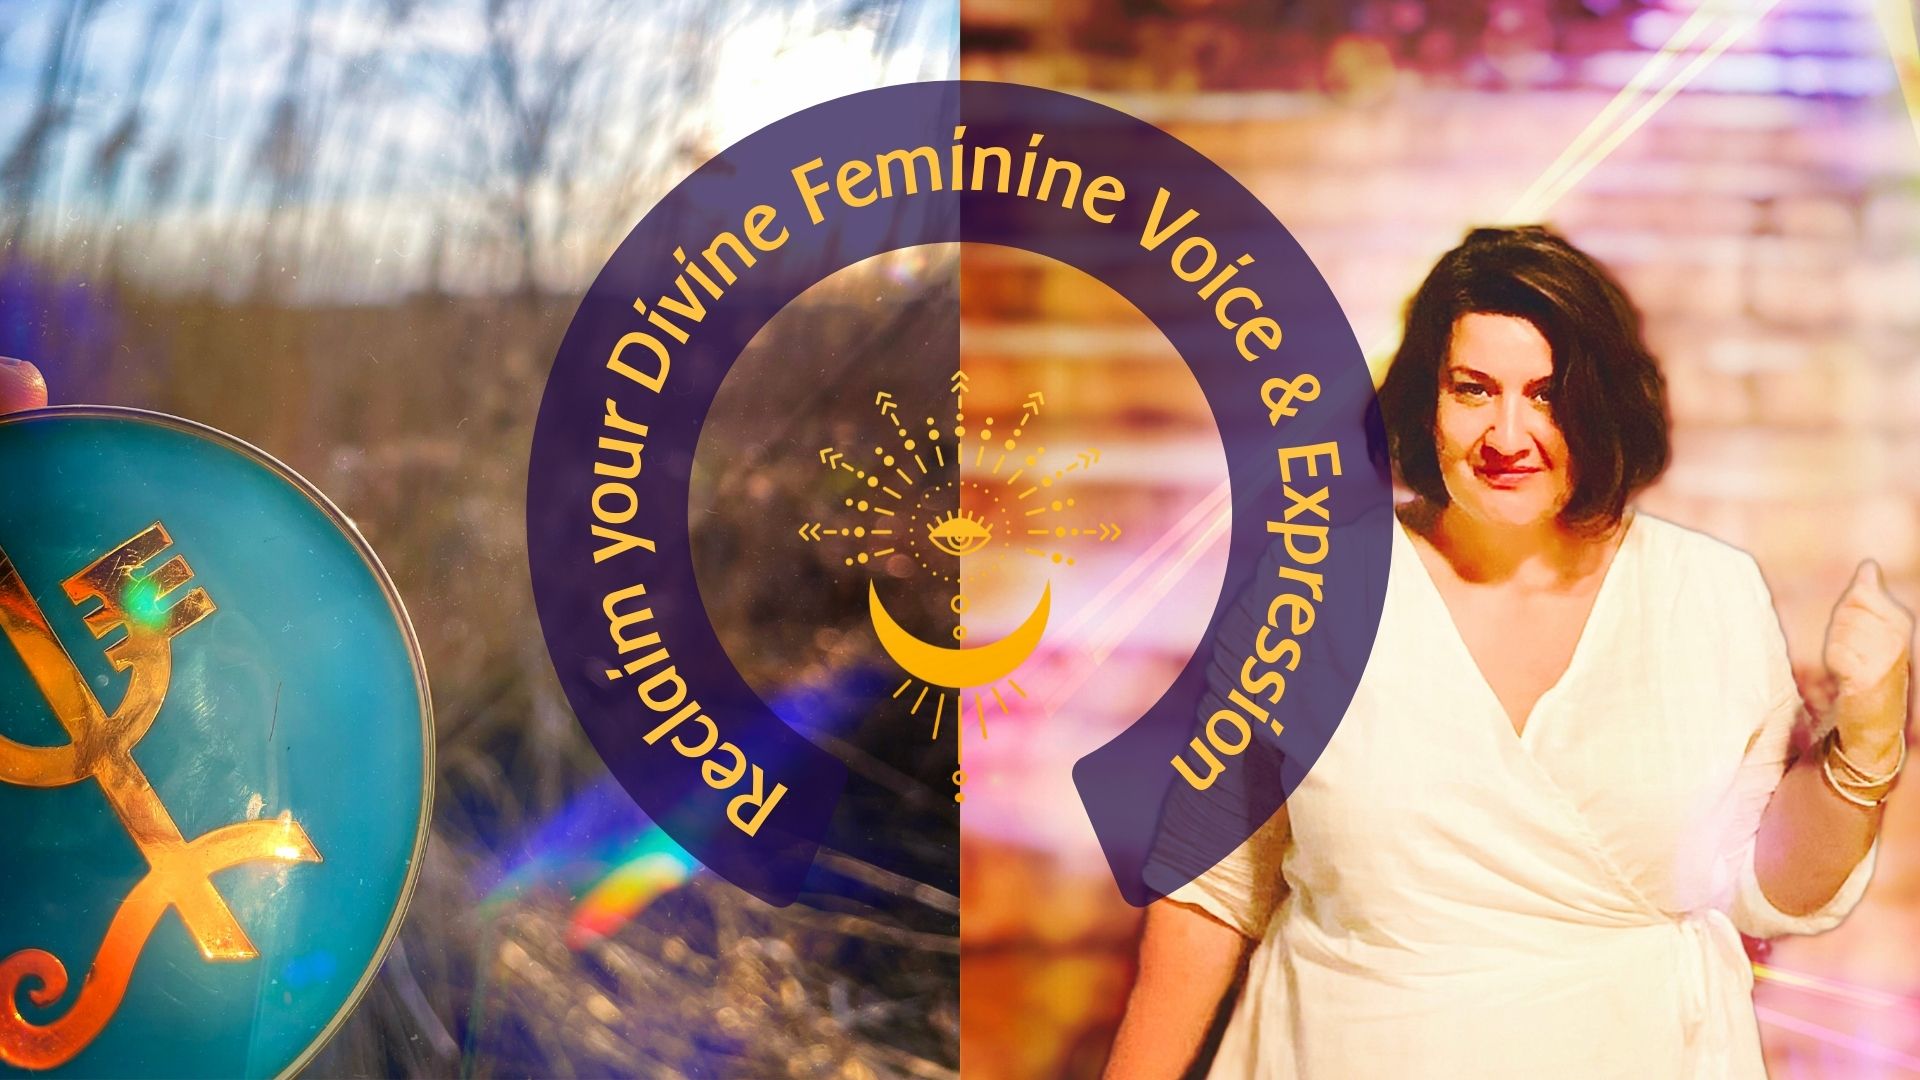 Reclaim your Divine Feminine Voice& Expression